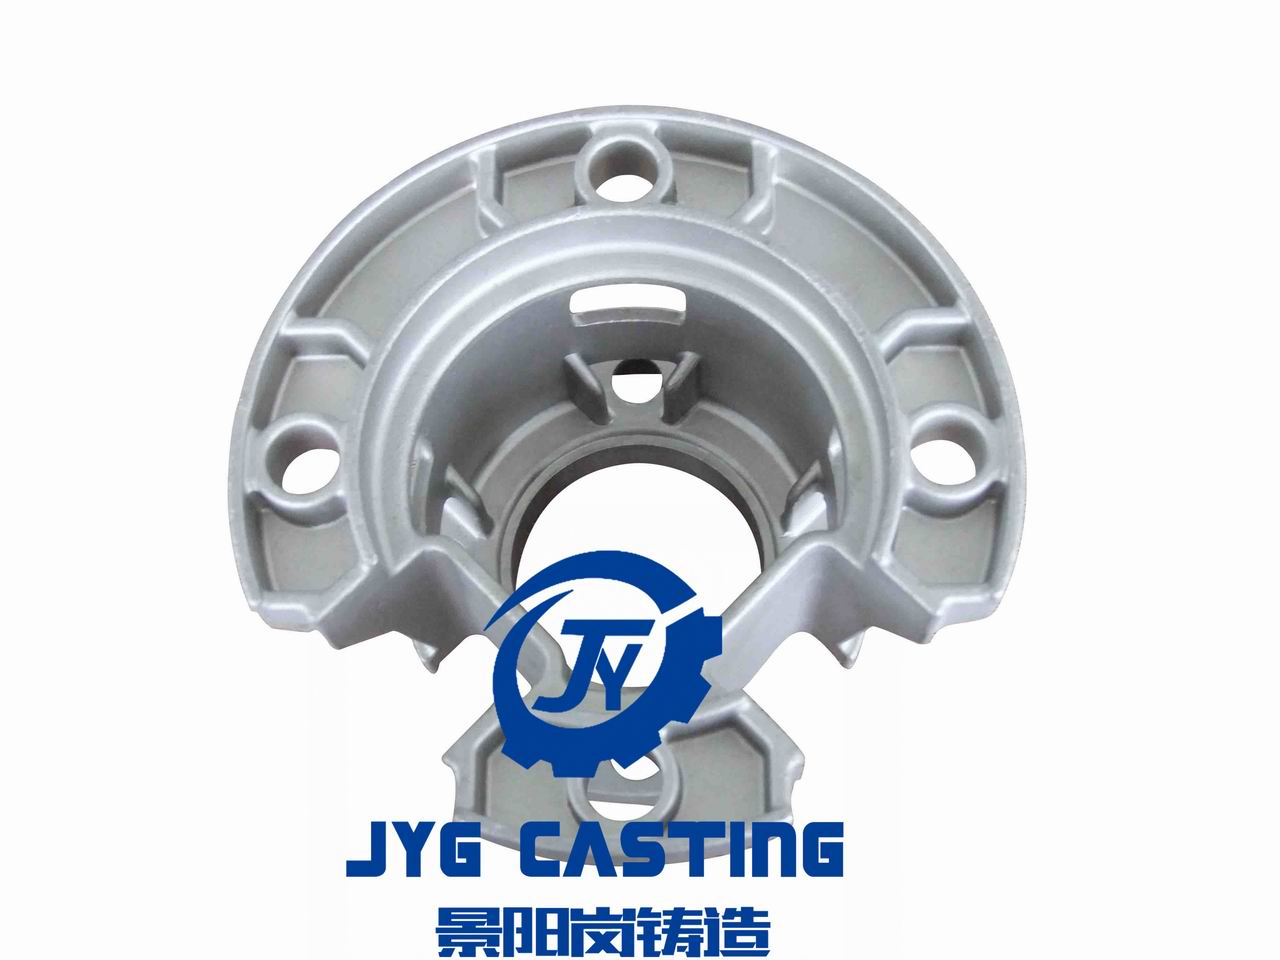 JYG Casting Customizes Quality Precision Casting Auto Parts